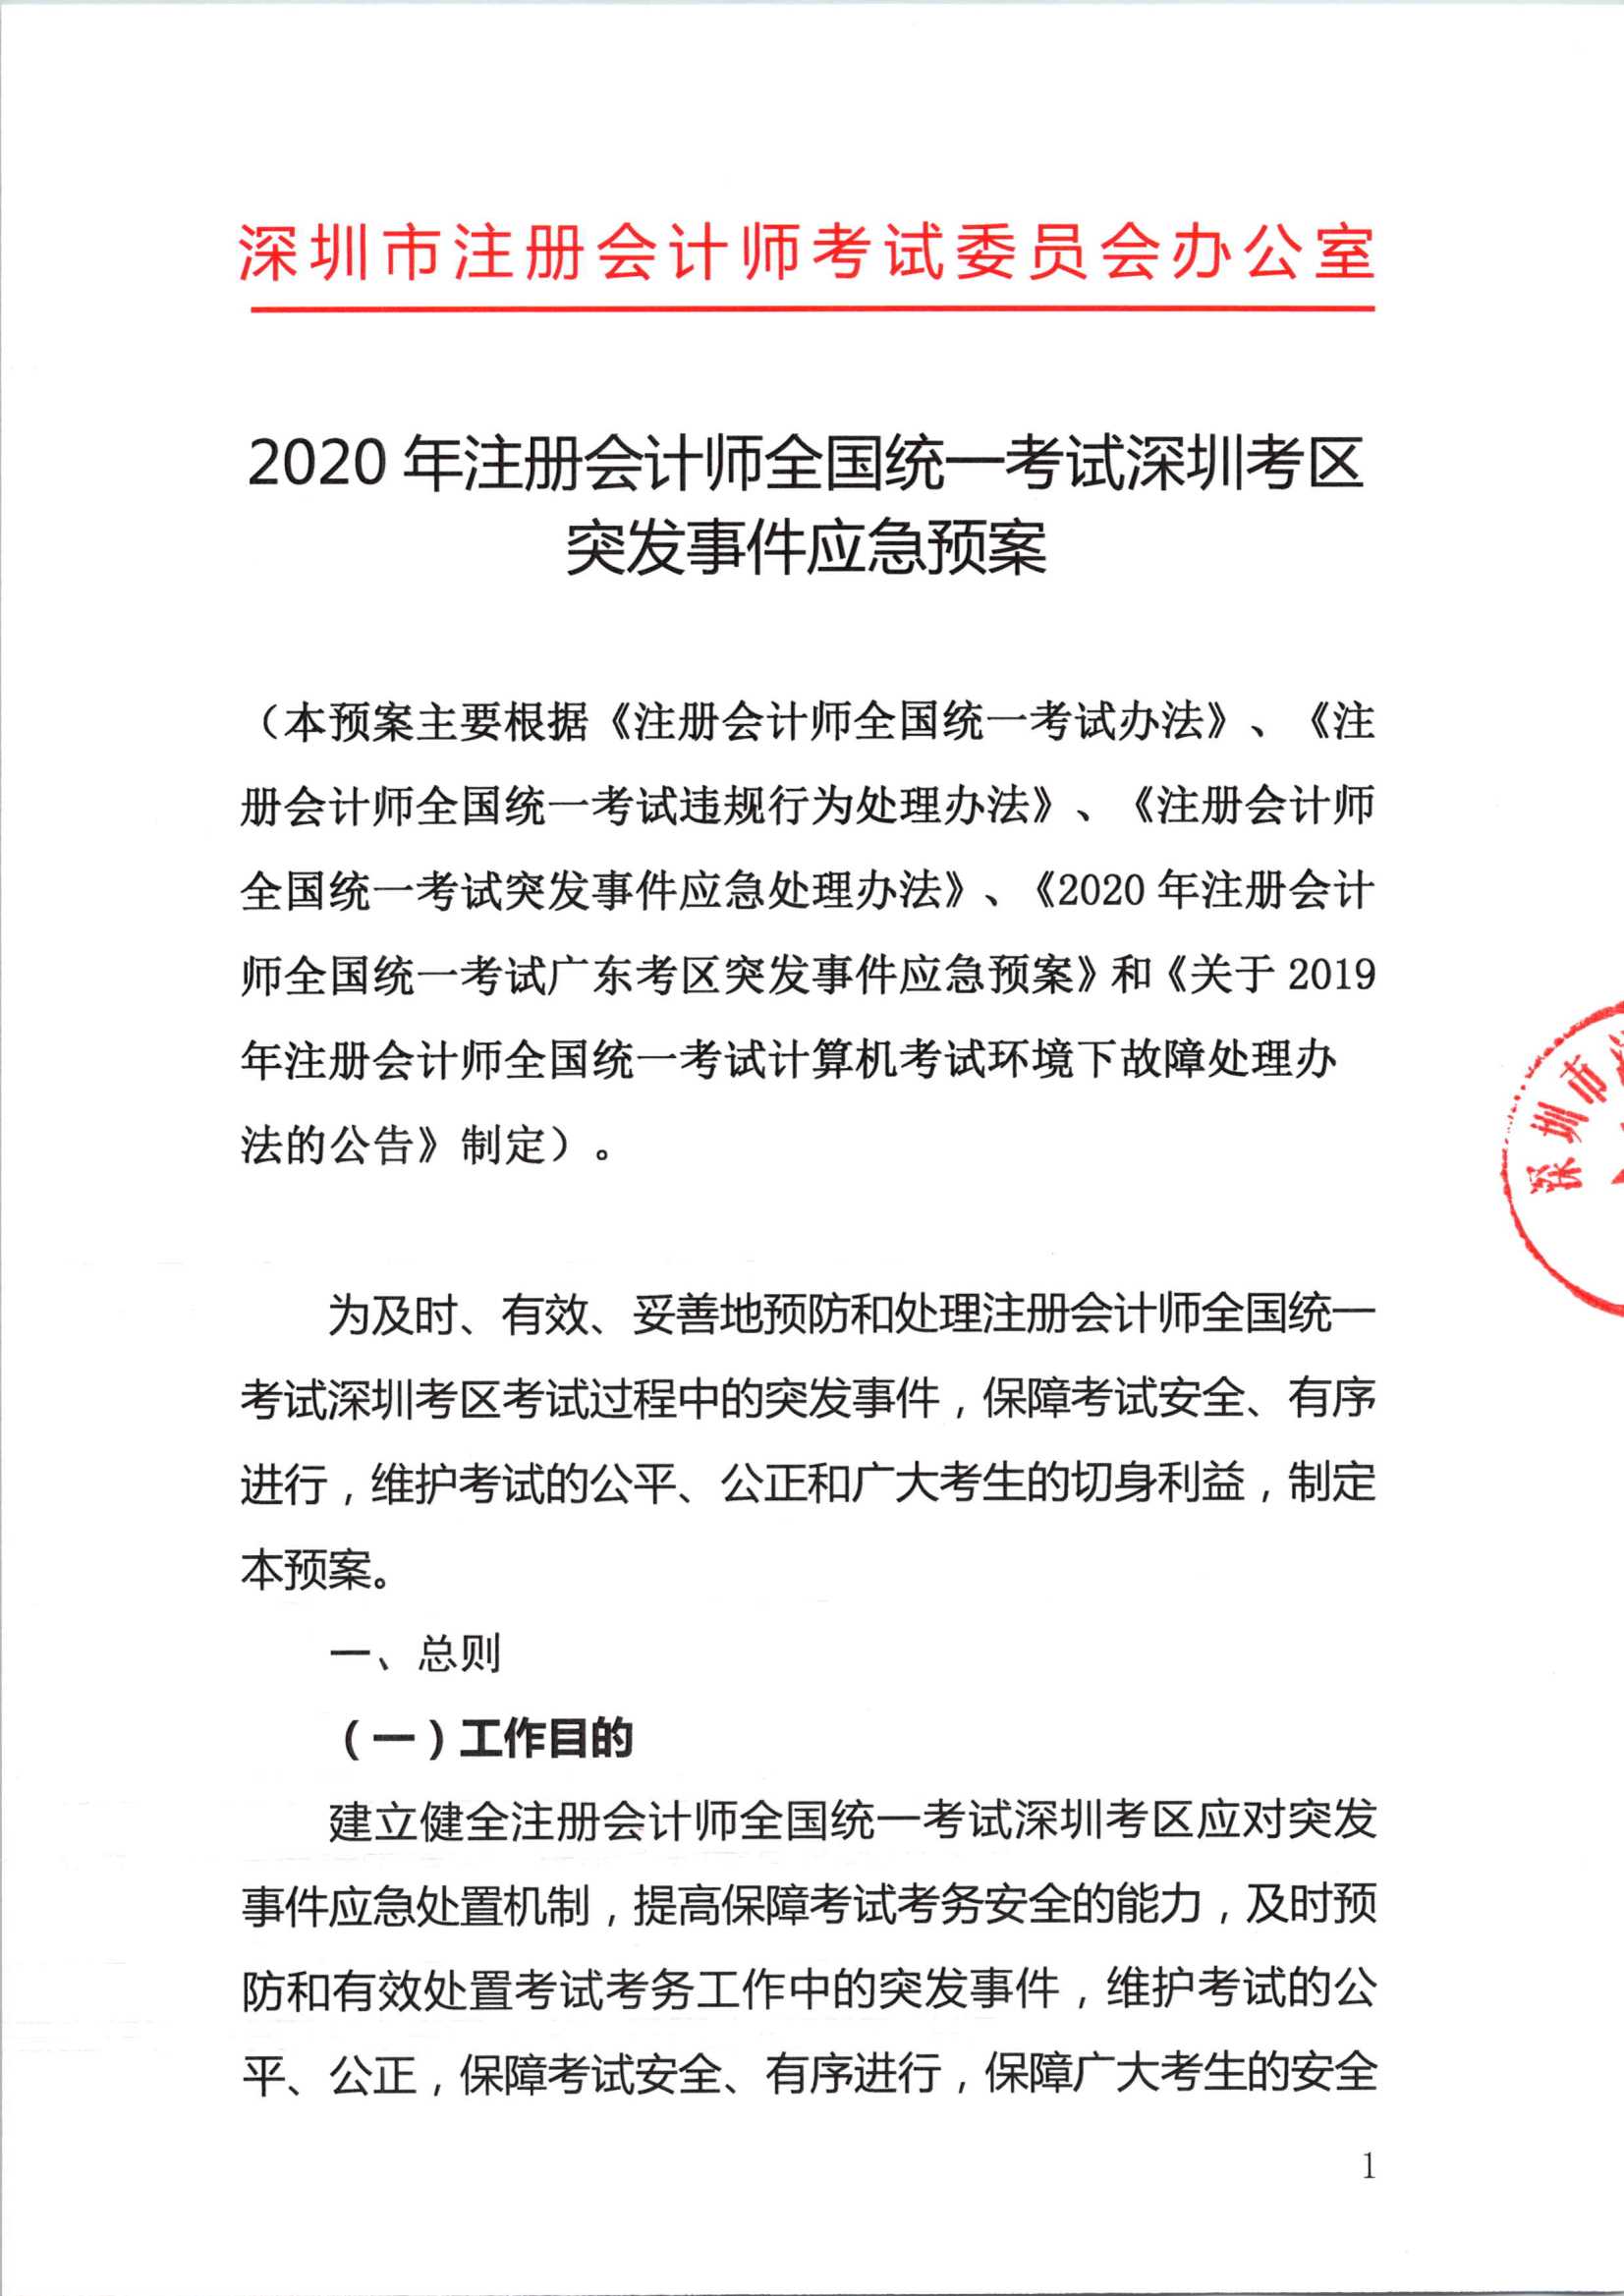 2020年注册会计师全国统一考试深圳考区突发事件应急预案_1.Png